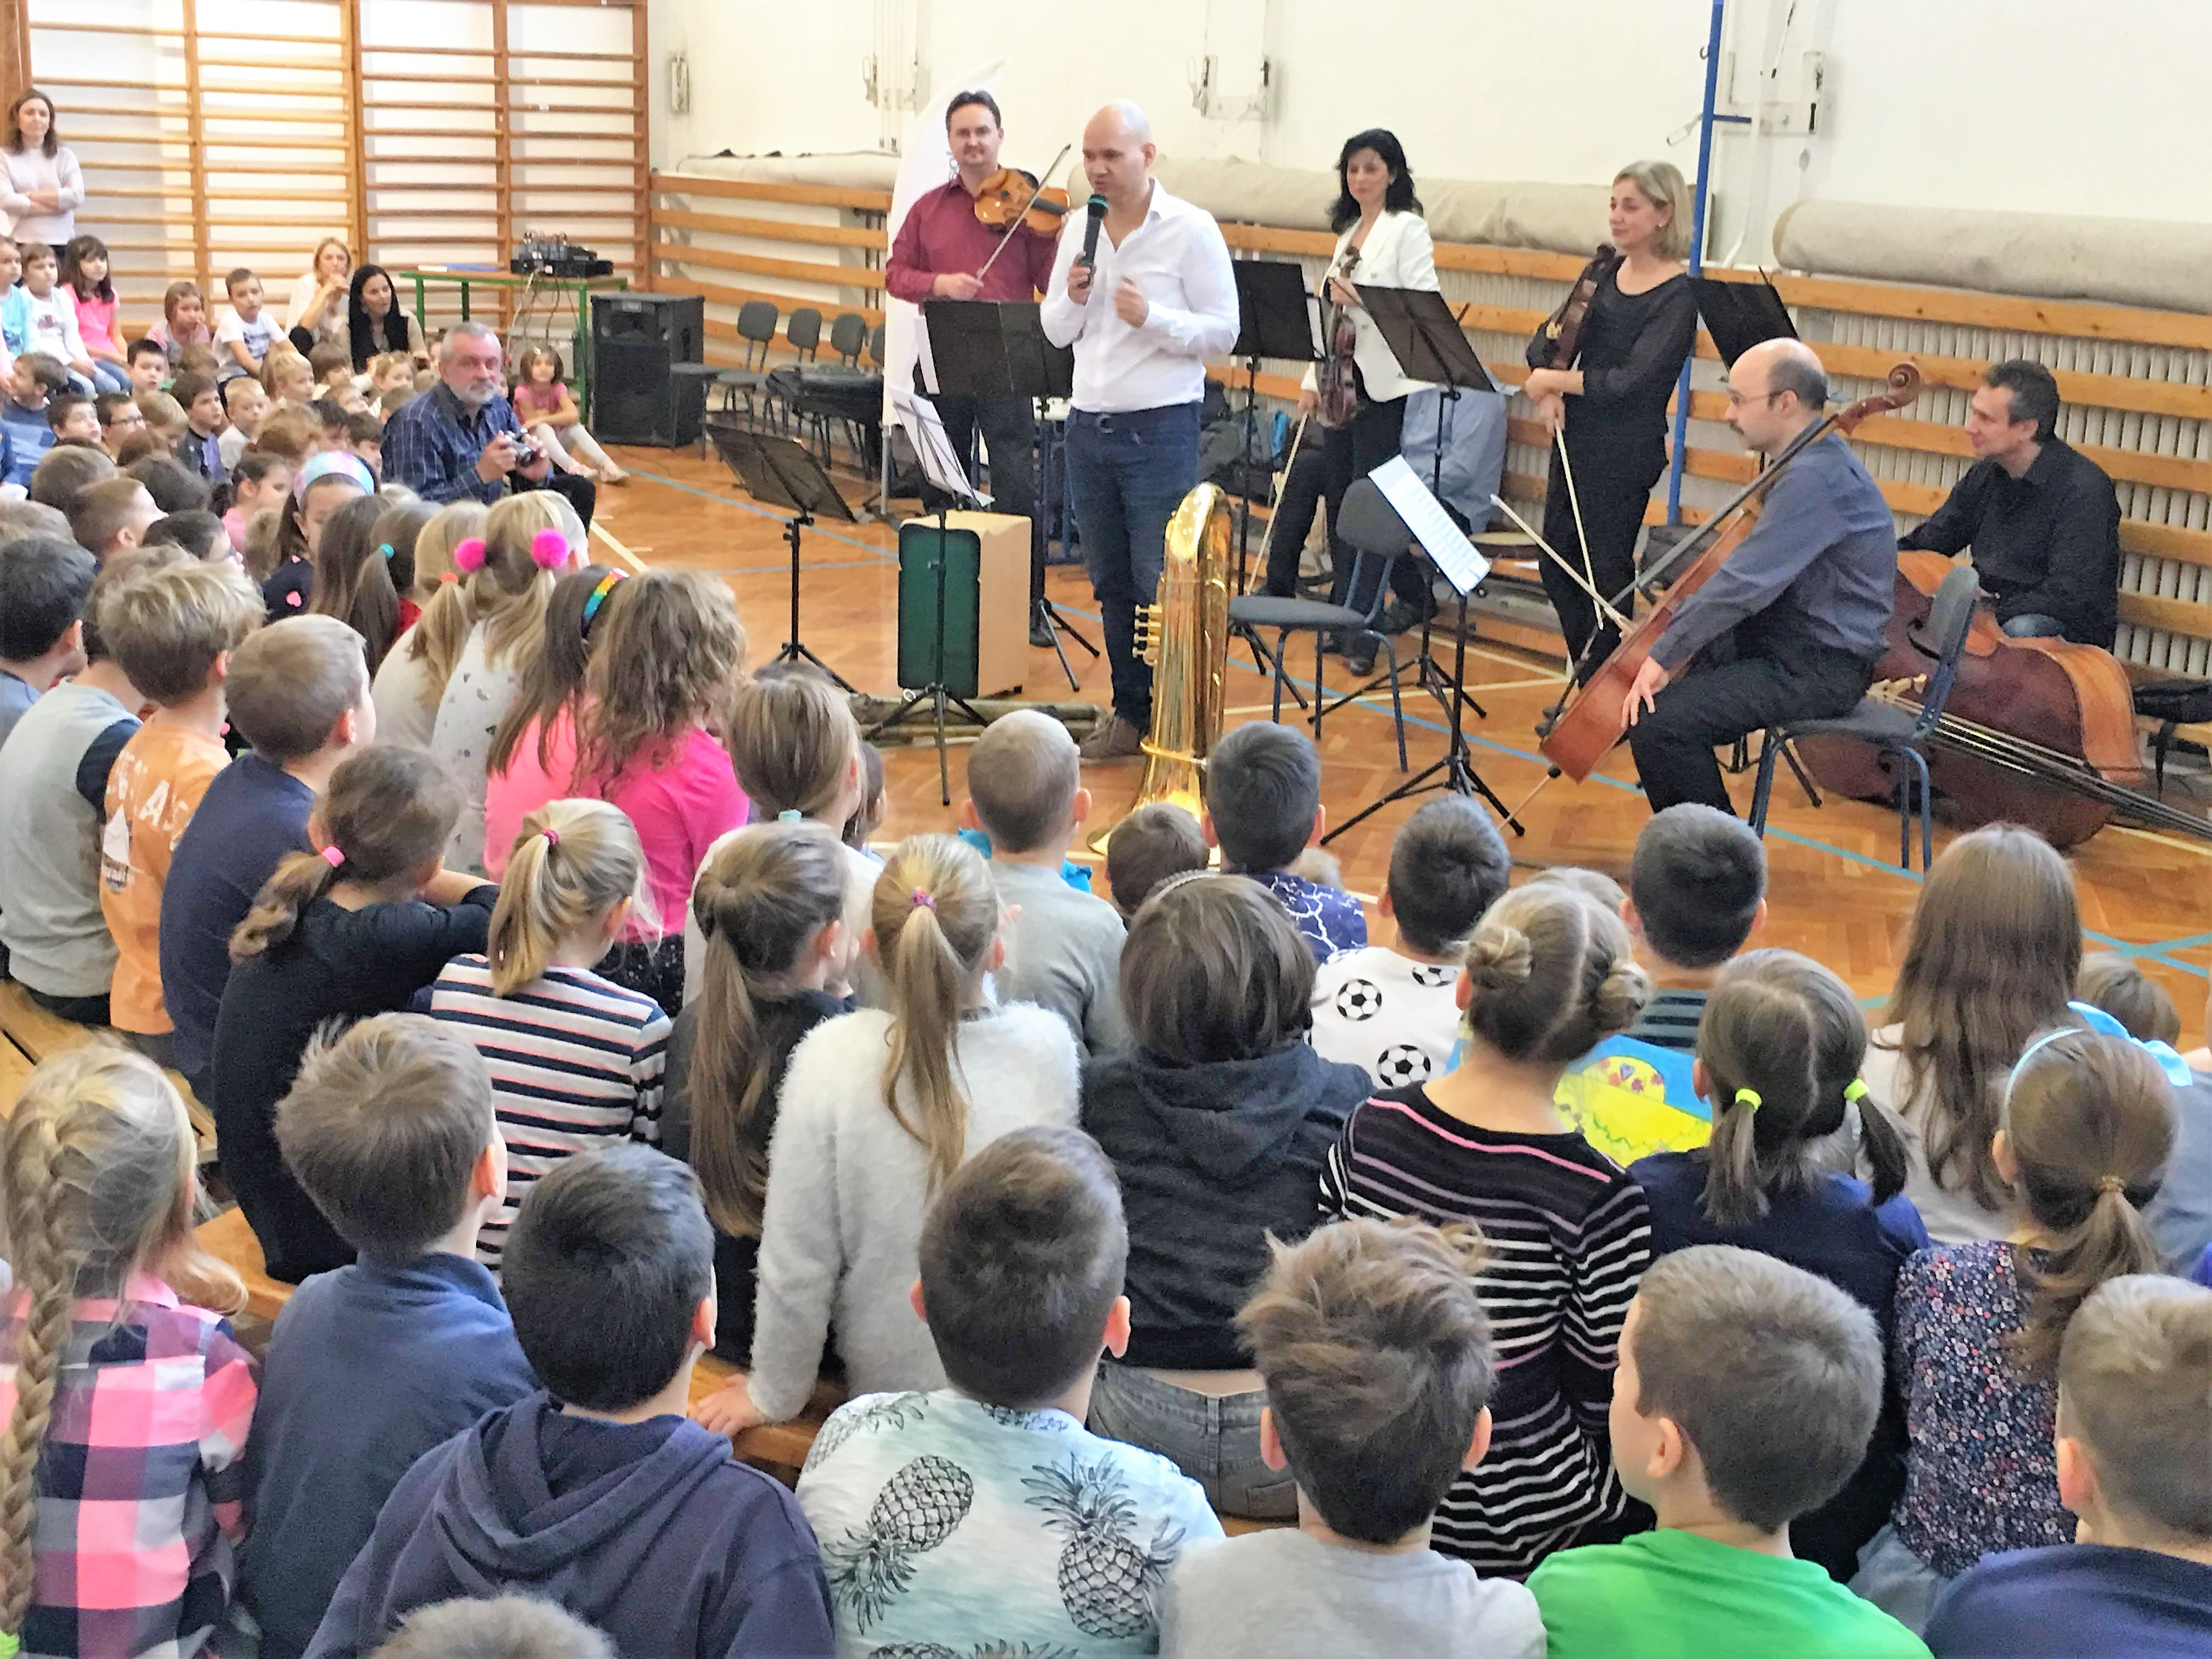 A Magyar Nemzeti Filharmonikusok művészeiből alakult kamarazenekar két hangversenyt adott iskolánkban. .